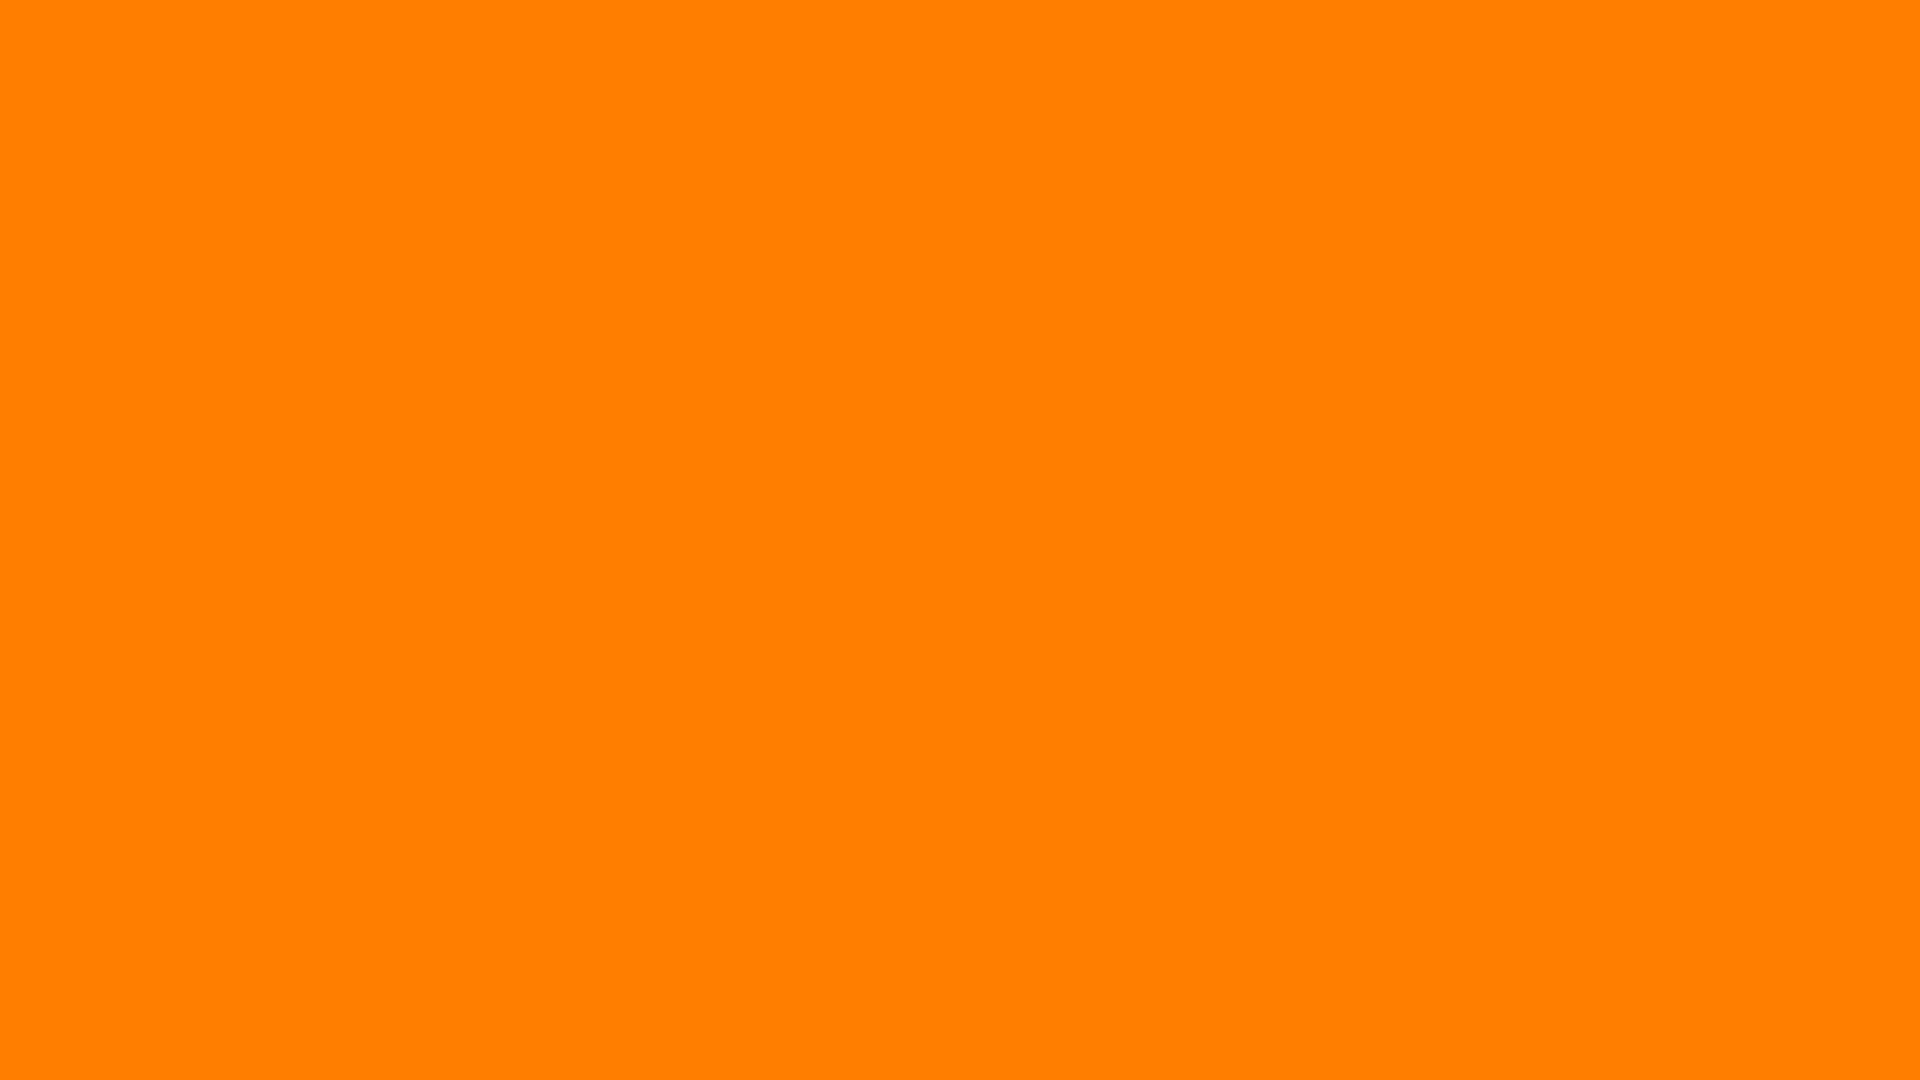 Hình nền màu cam đơn sắc là một trong những lựa chọn đẹp tuyệt vời để tăng thêm sự hiện đại và sang trọng cho ngôi nhà của bạn. Màu sắc bắt mắt của nó sẽ làm cho căn phòng của bạn trở nên thu hút và đẳng cấp hơn. Hãy xem ngay hình ảnh liên quan để khám phá tính năng bất ngờ của hình nền màu cam đơn sắc.